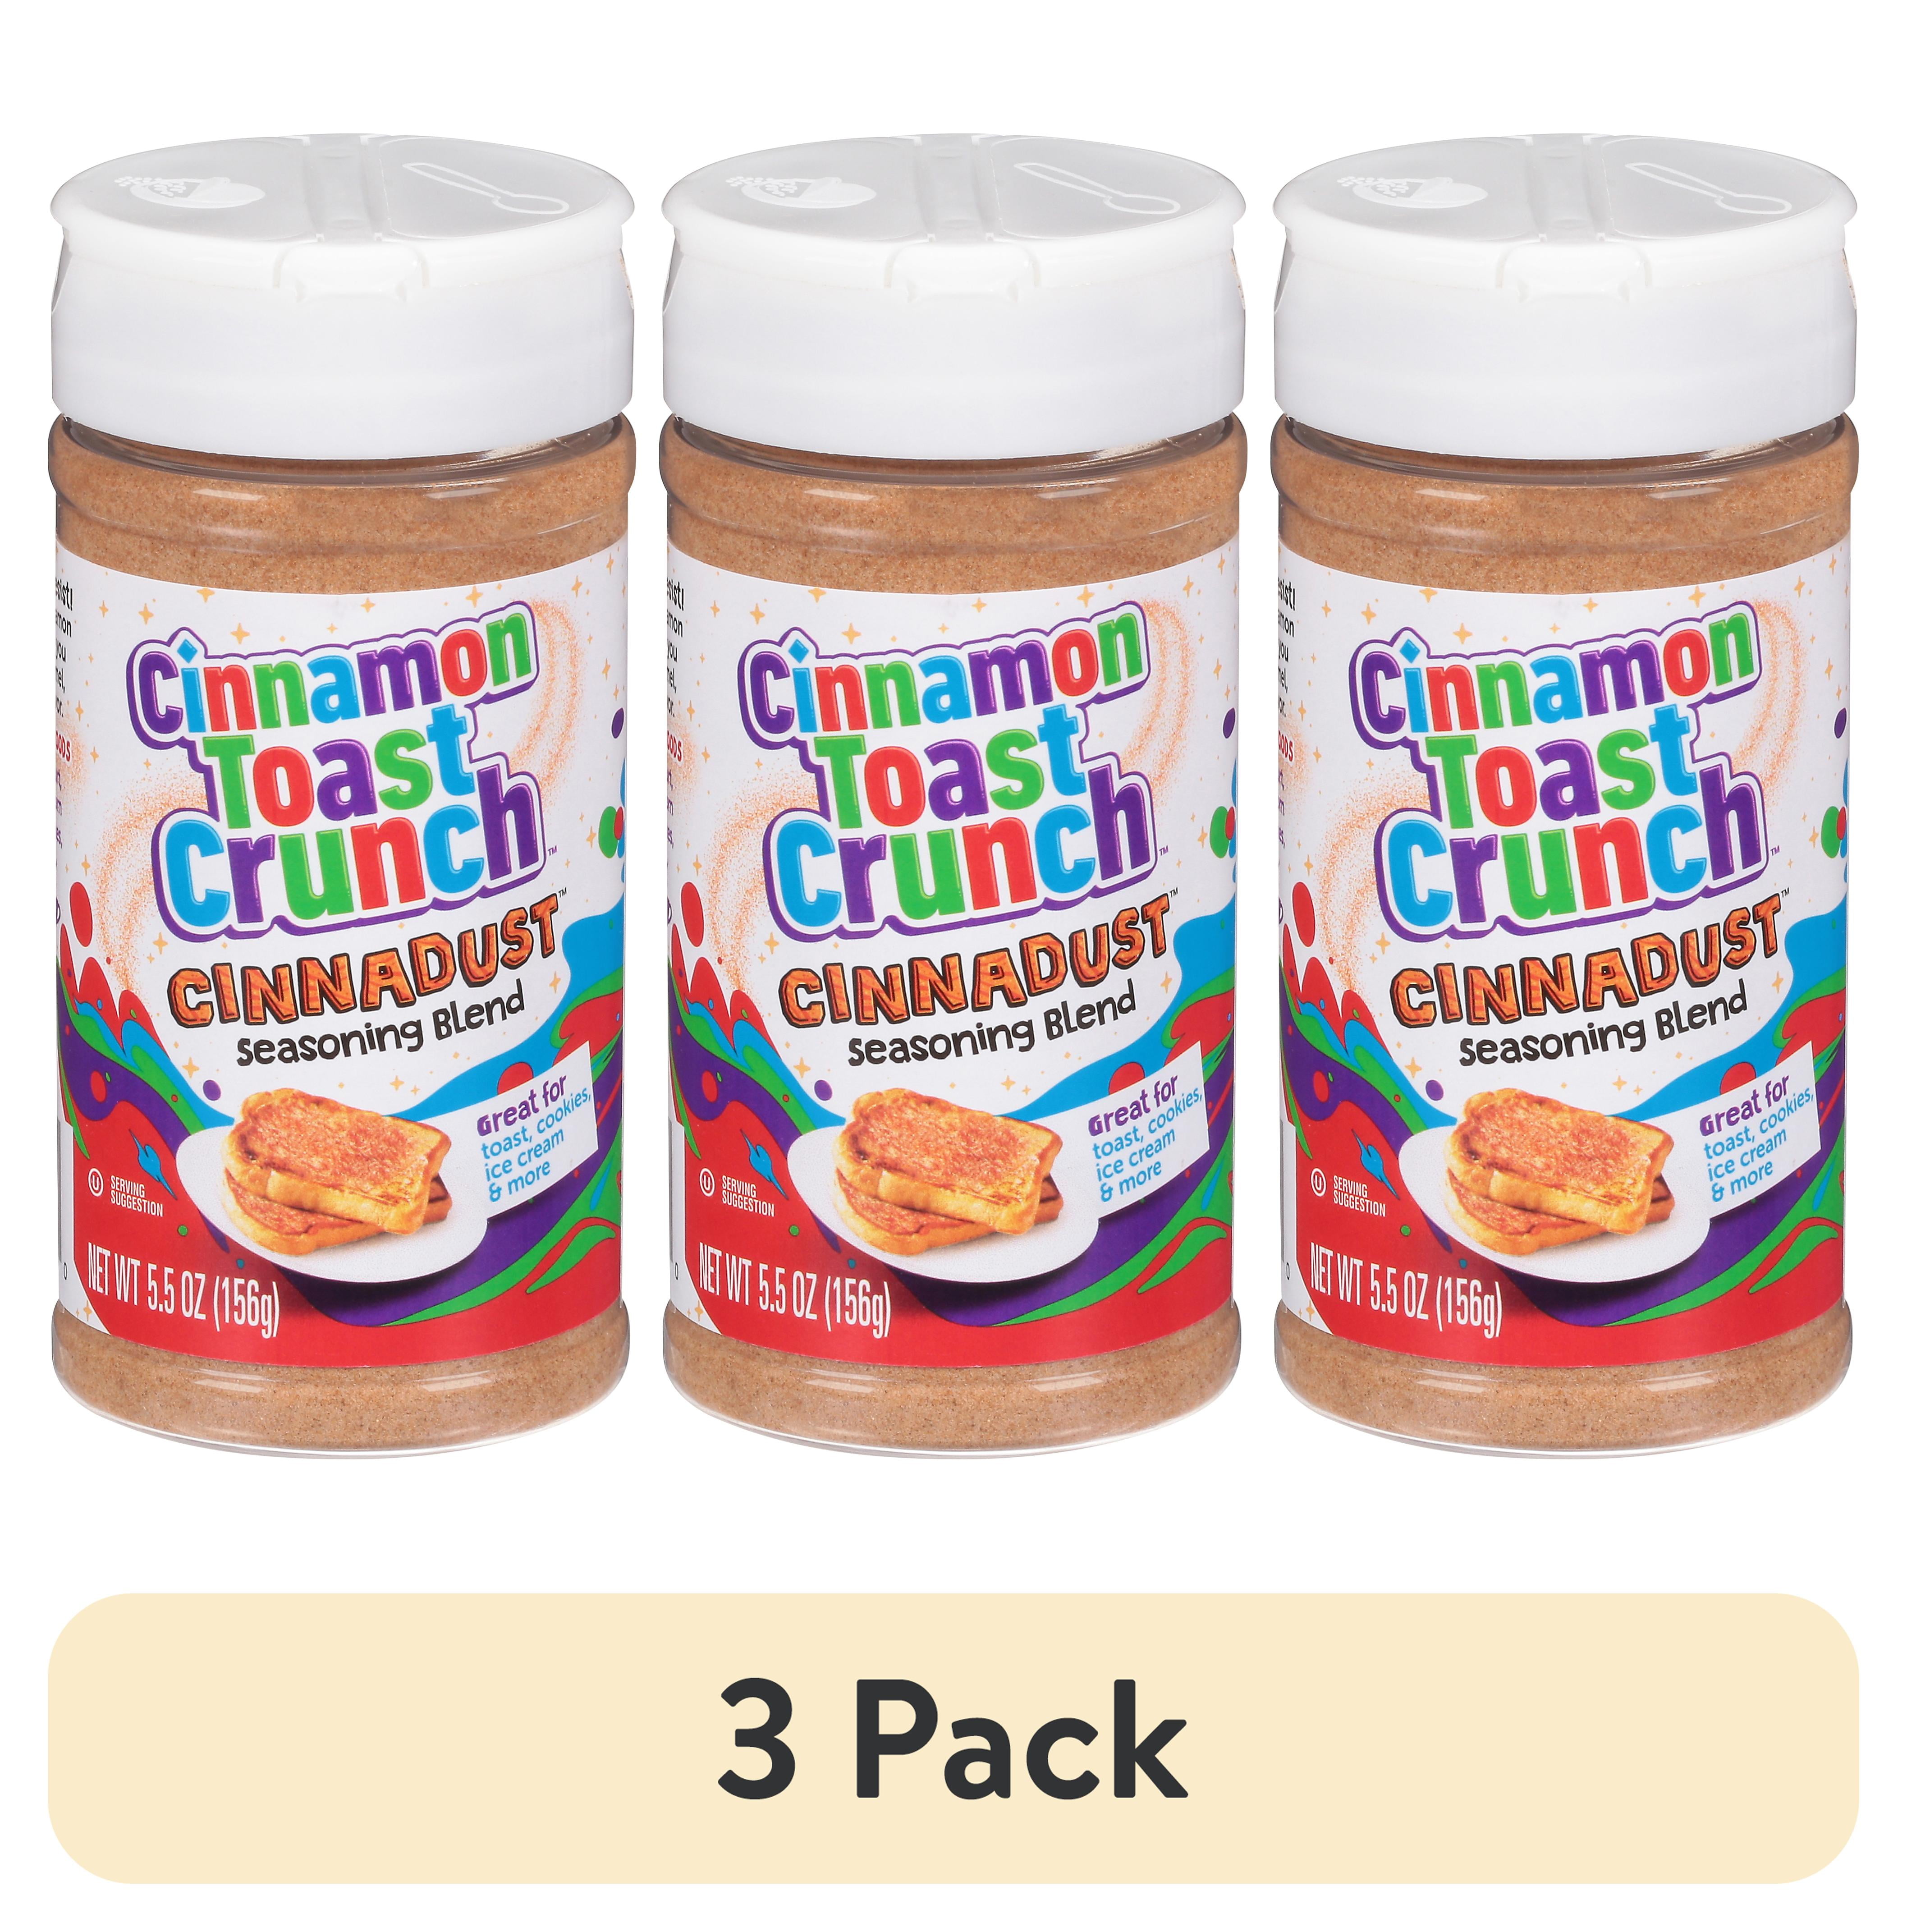 Try a sprinkle of Cinnamon Toast Crunch Cinnadust seasoning